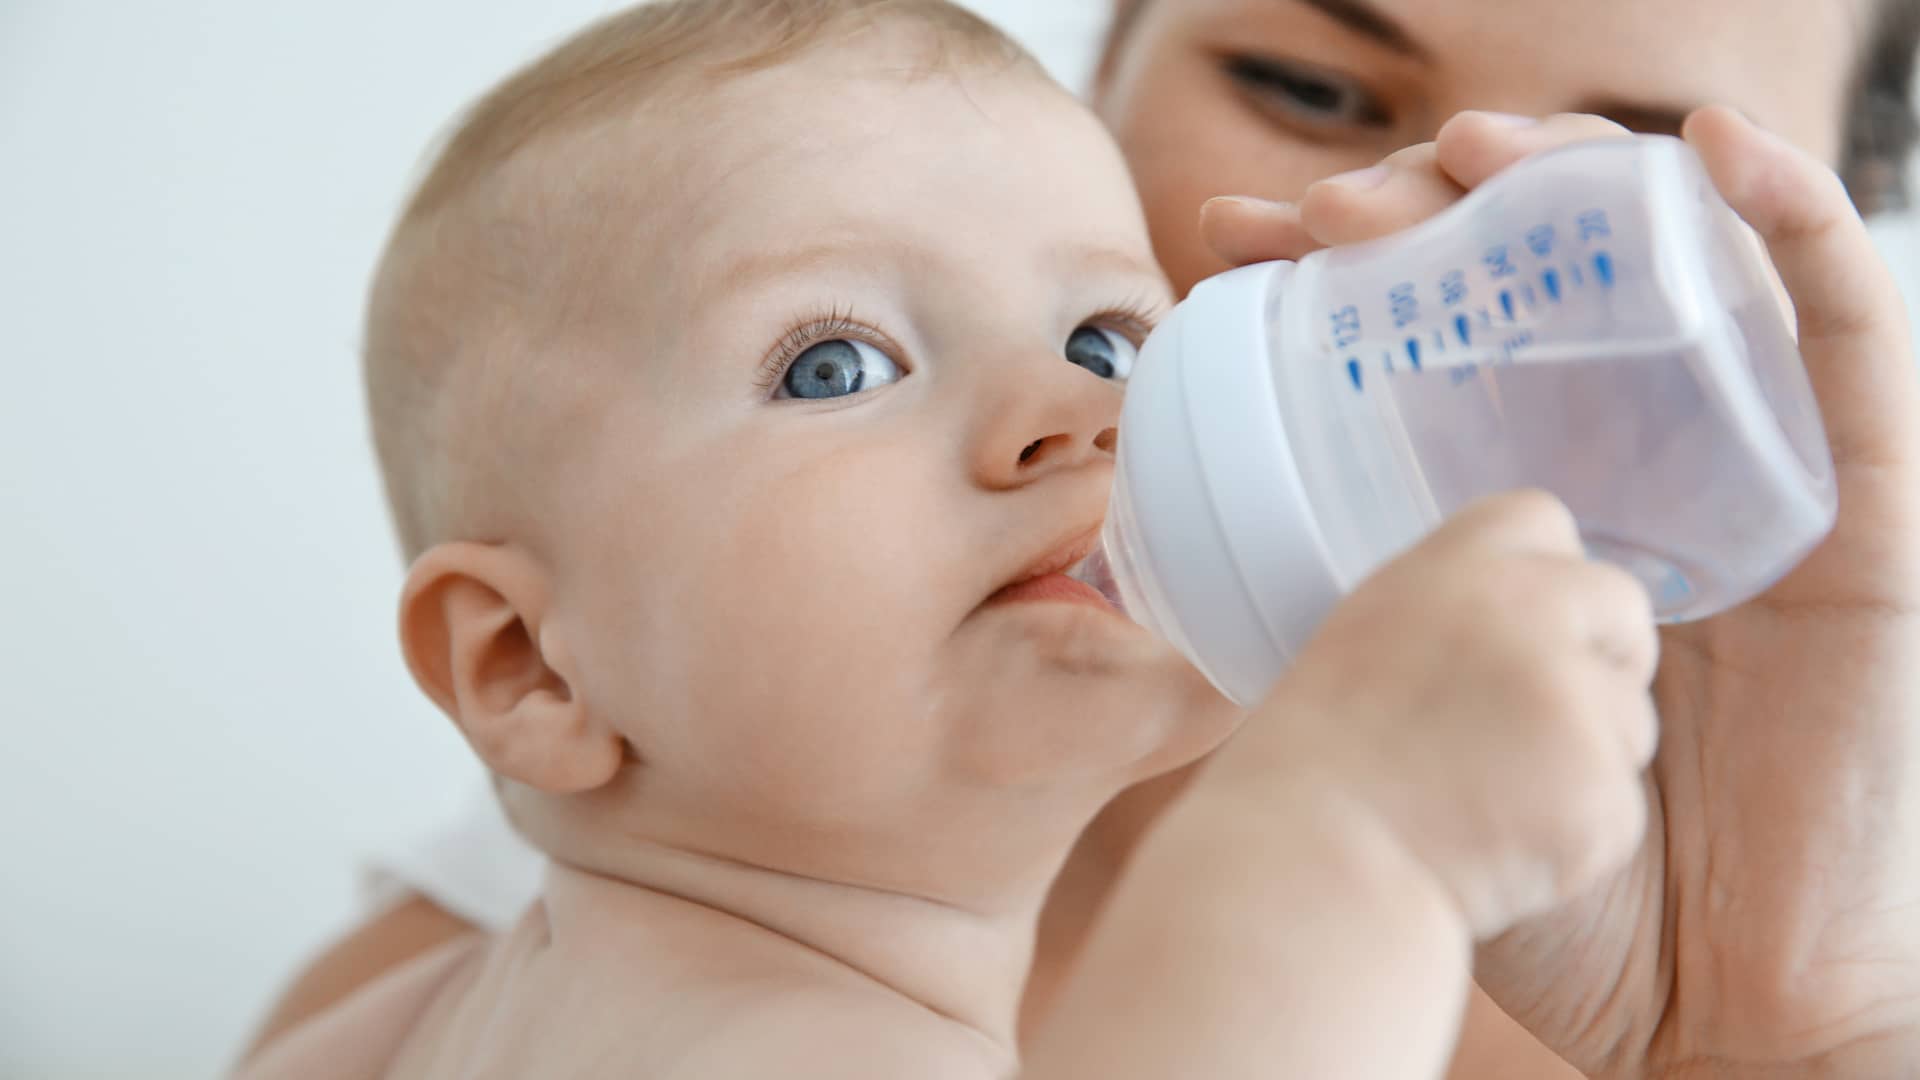 bebé bebiendo agua de un biberon que le da su madre porque tiene mucha sed por la diabetes que padece